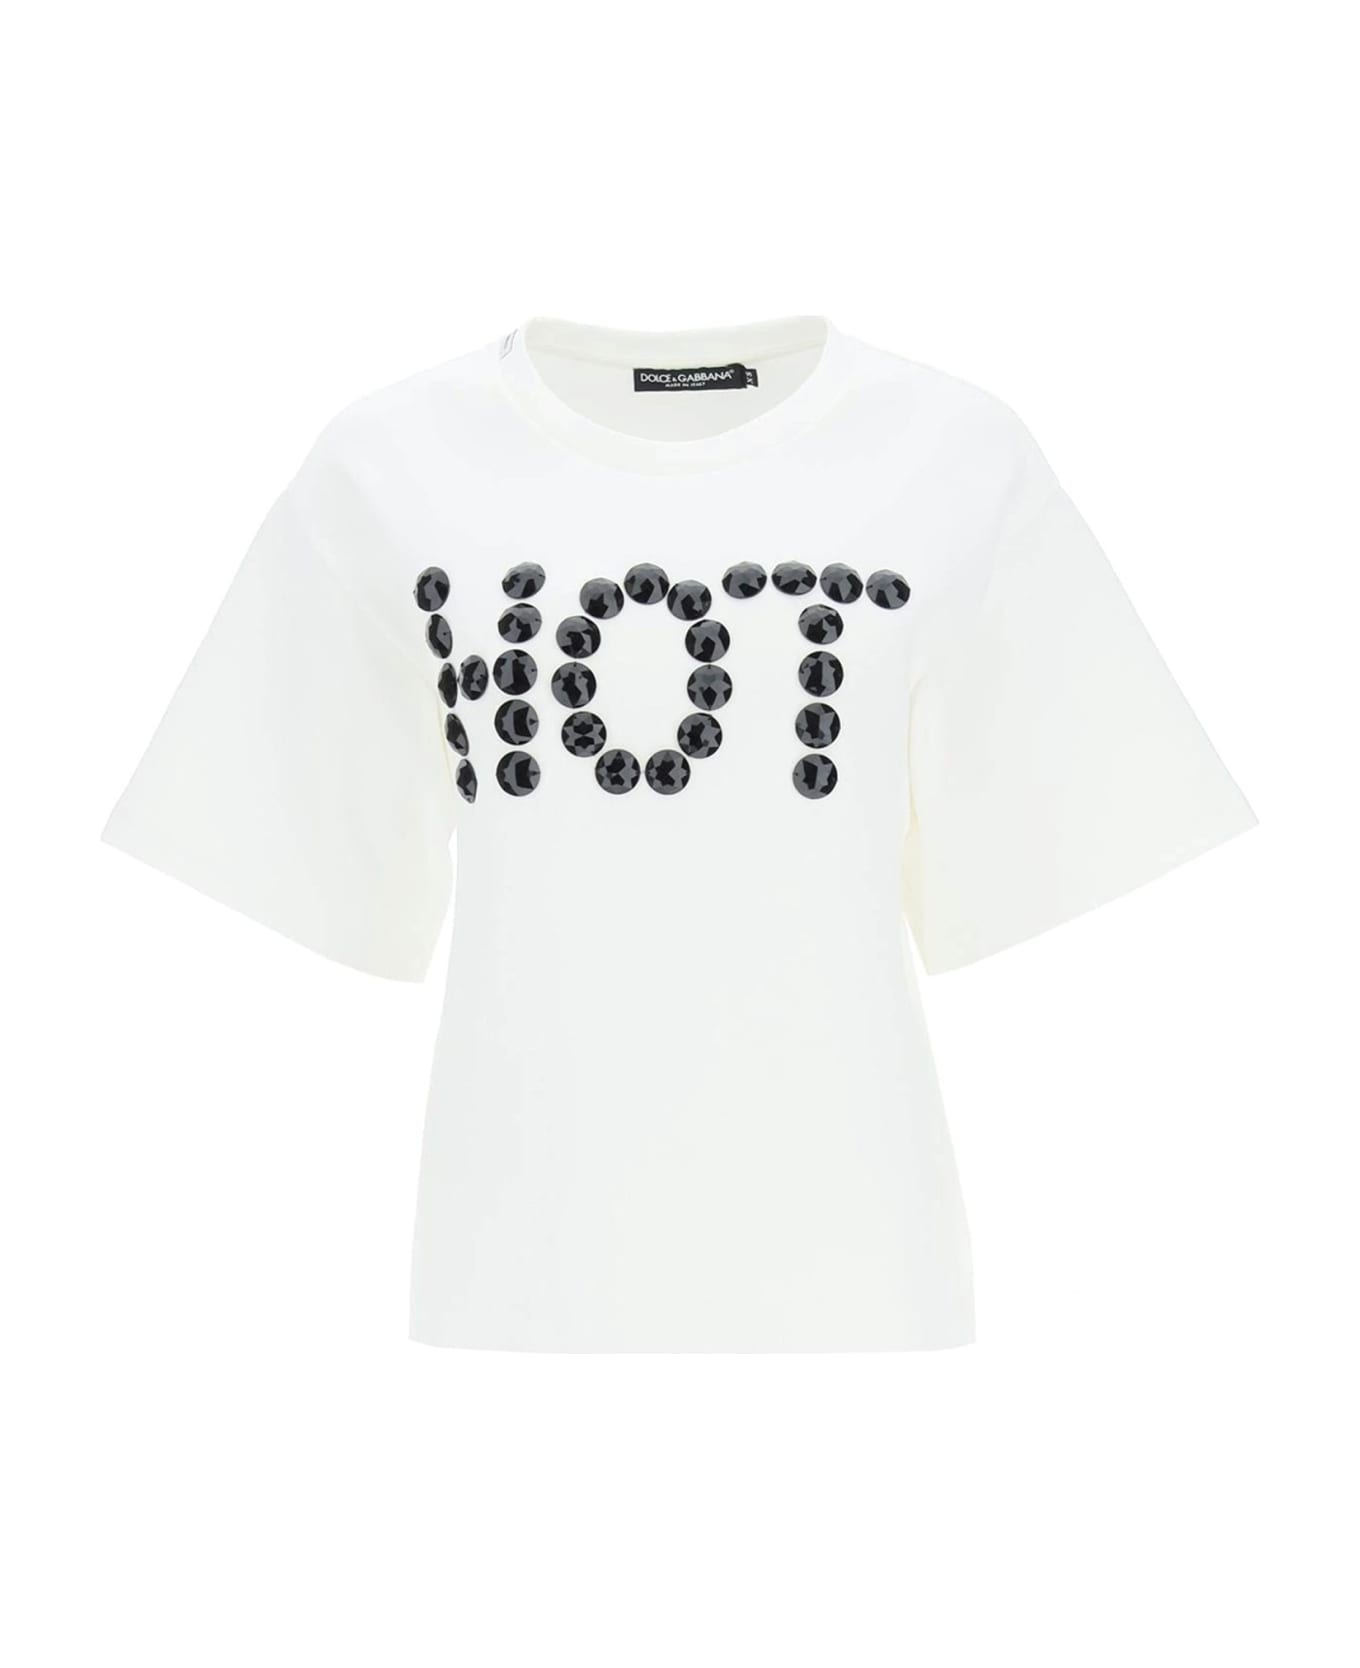 Dolce & Gabbana Hot T-shirt - White